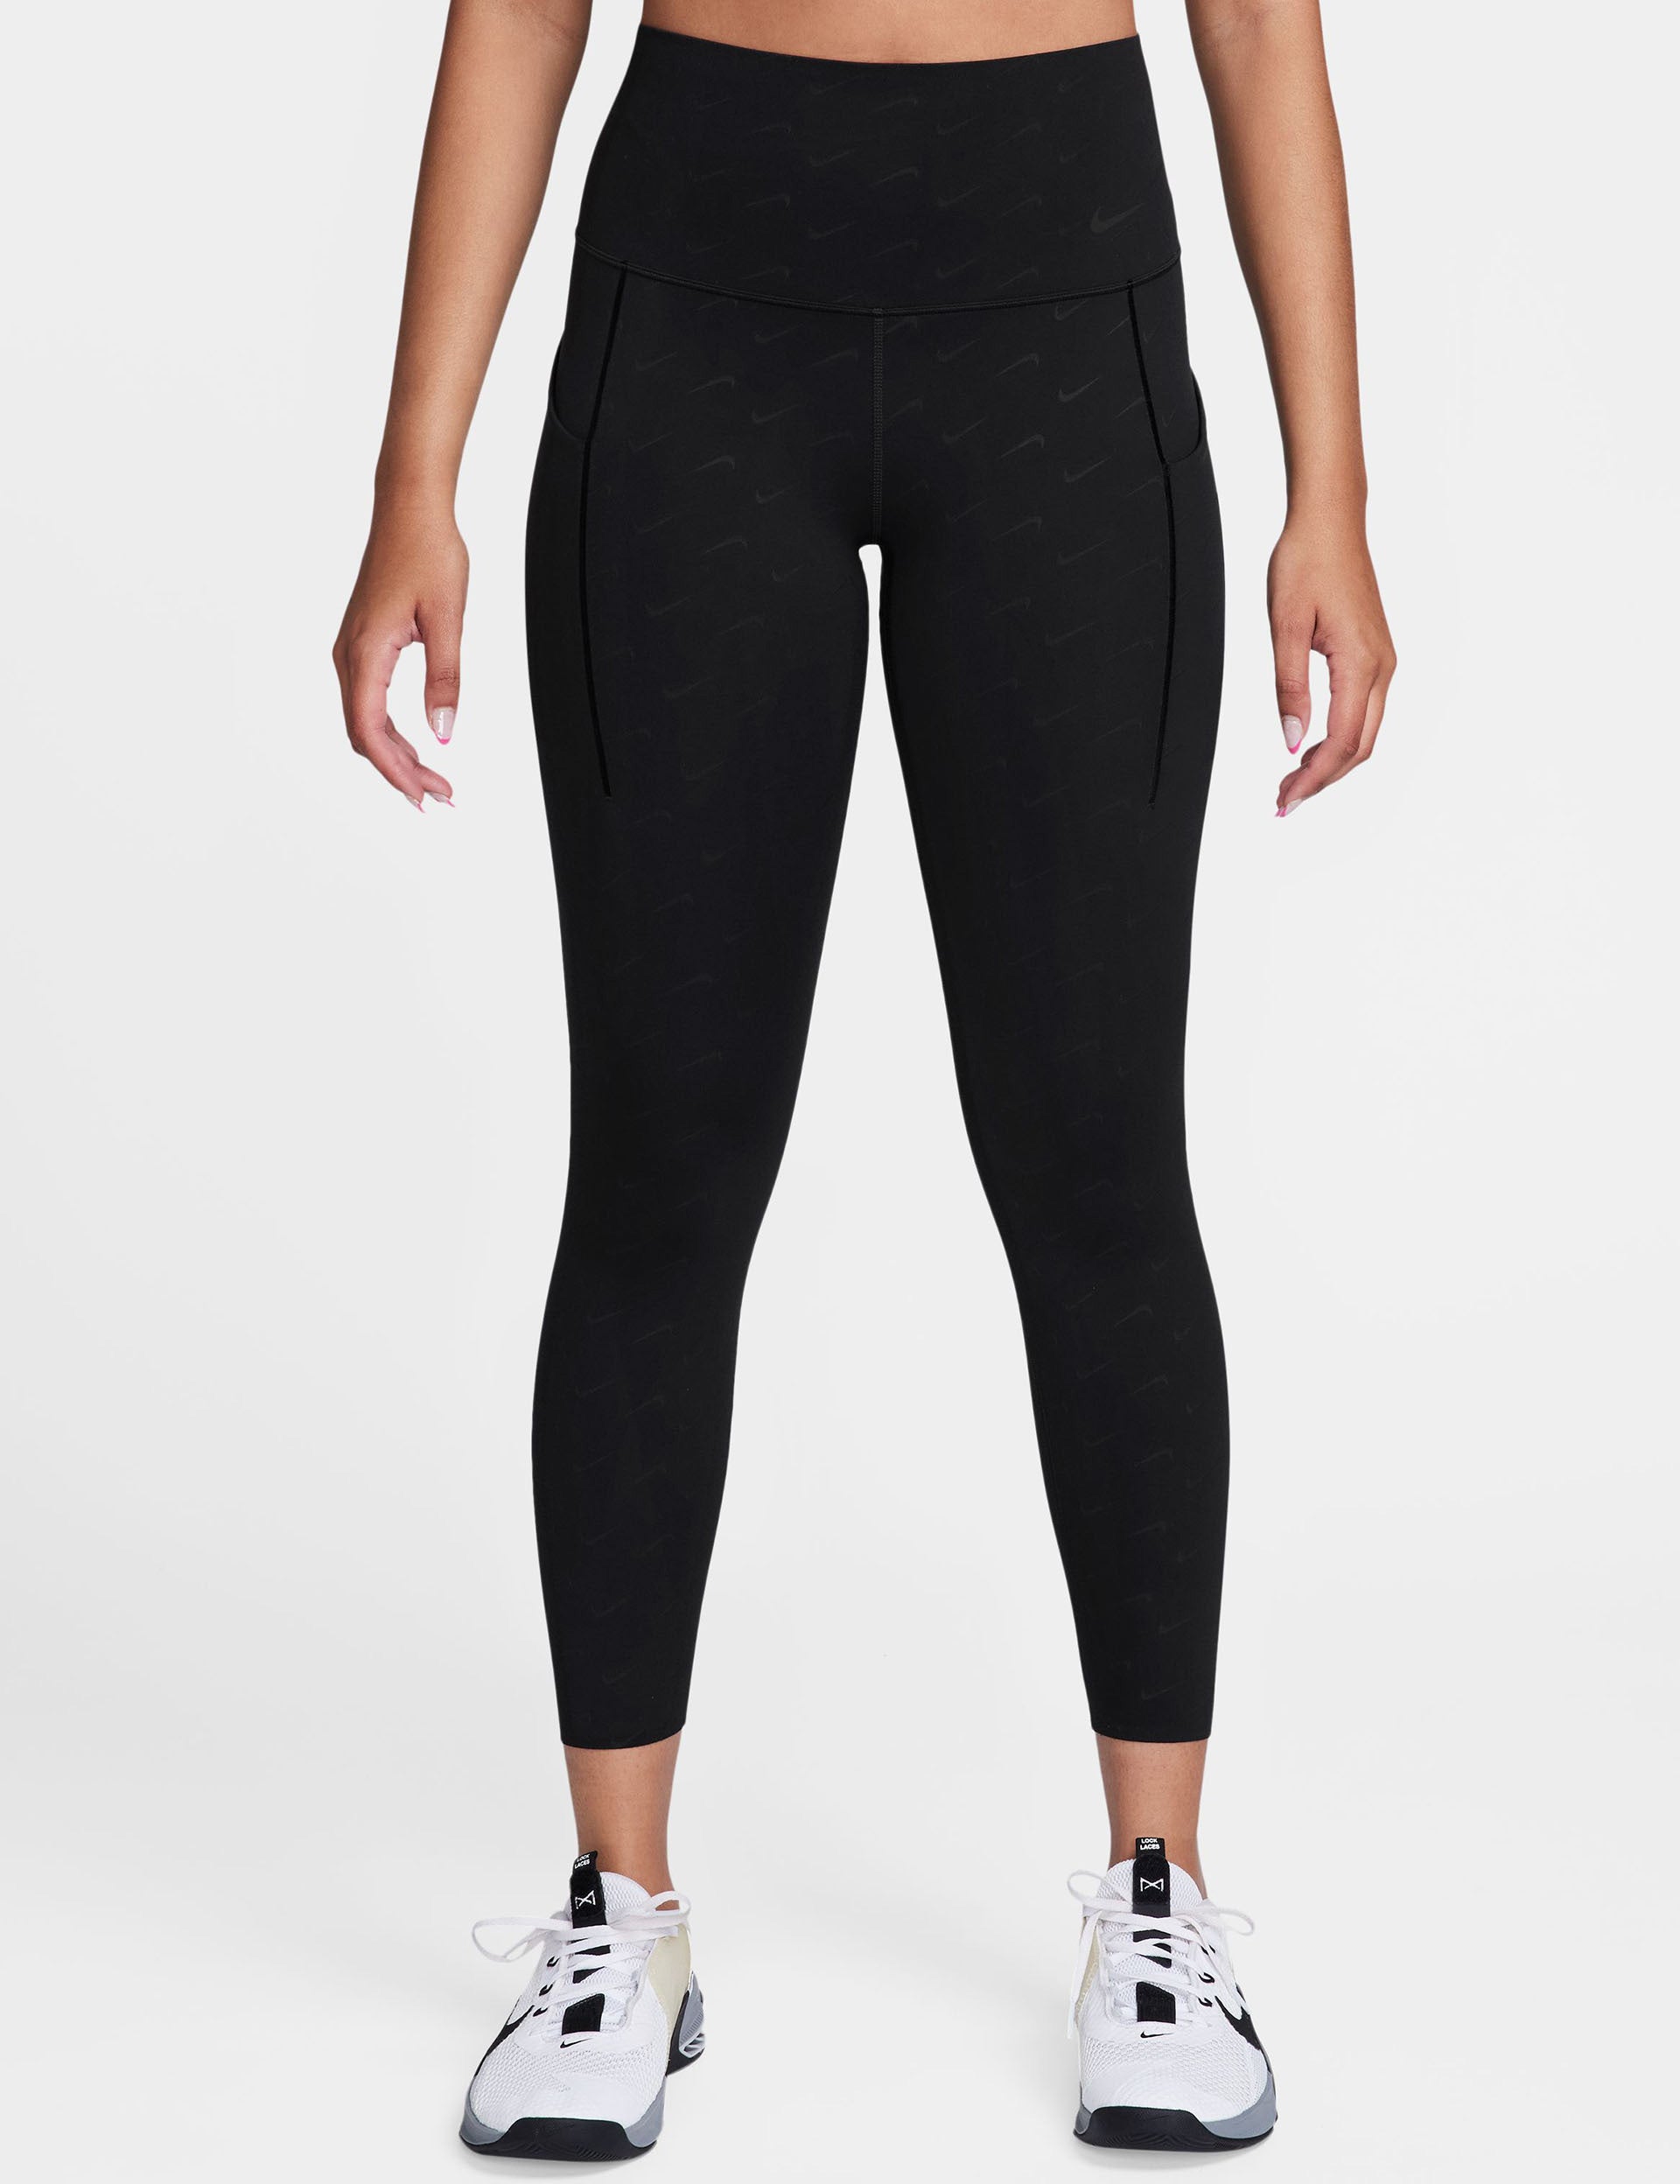 Nike Yoga Dri-FIT high rise 7/8 leggings in printed black